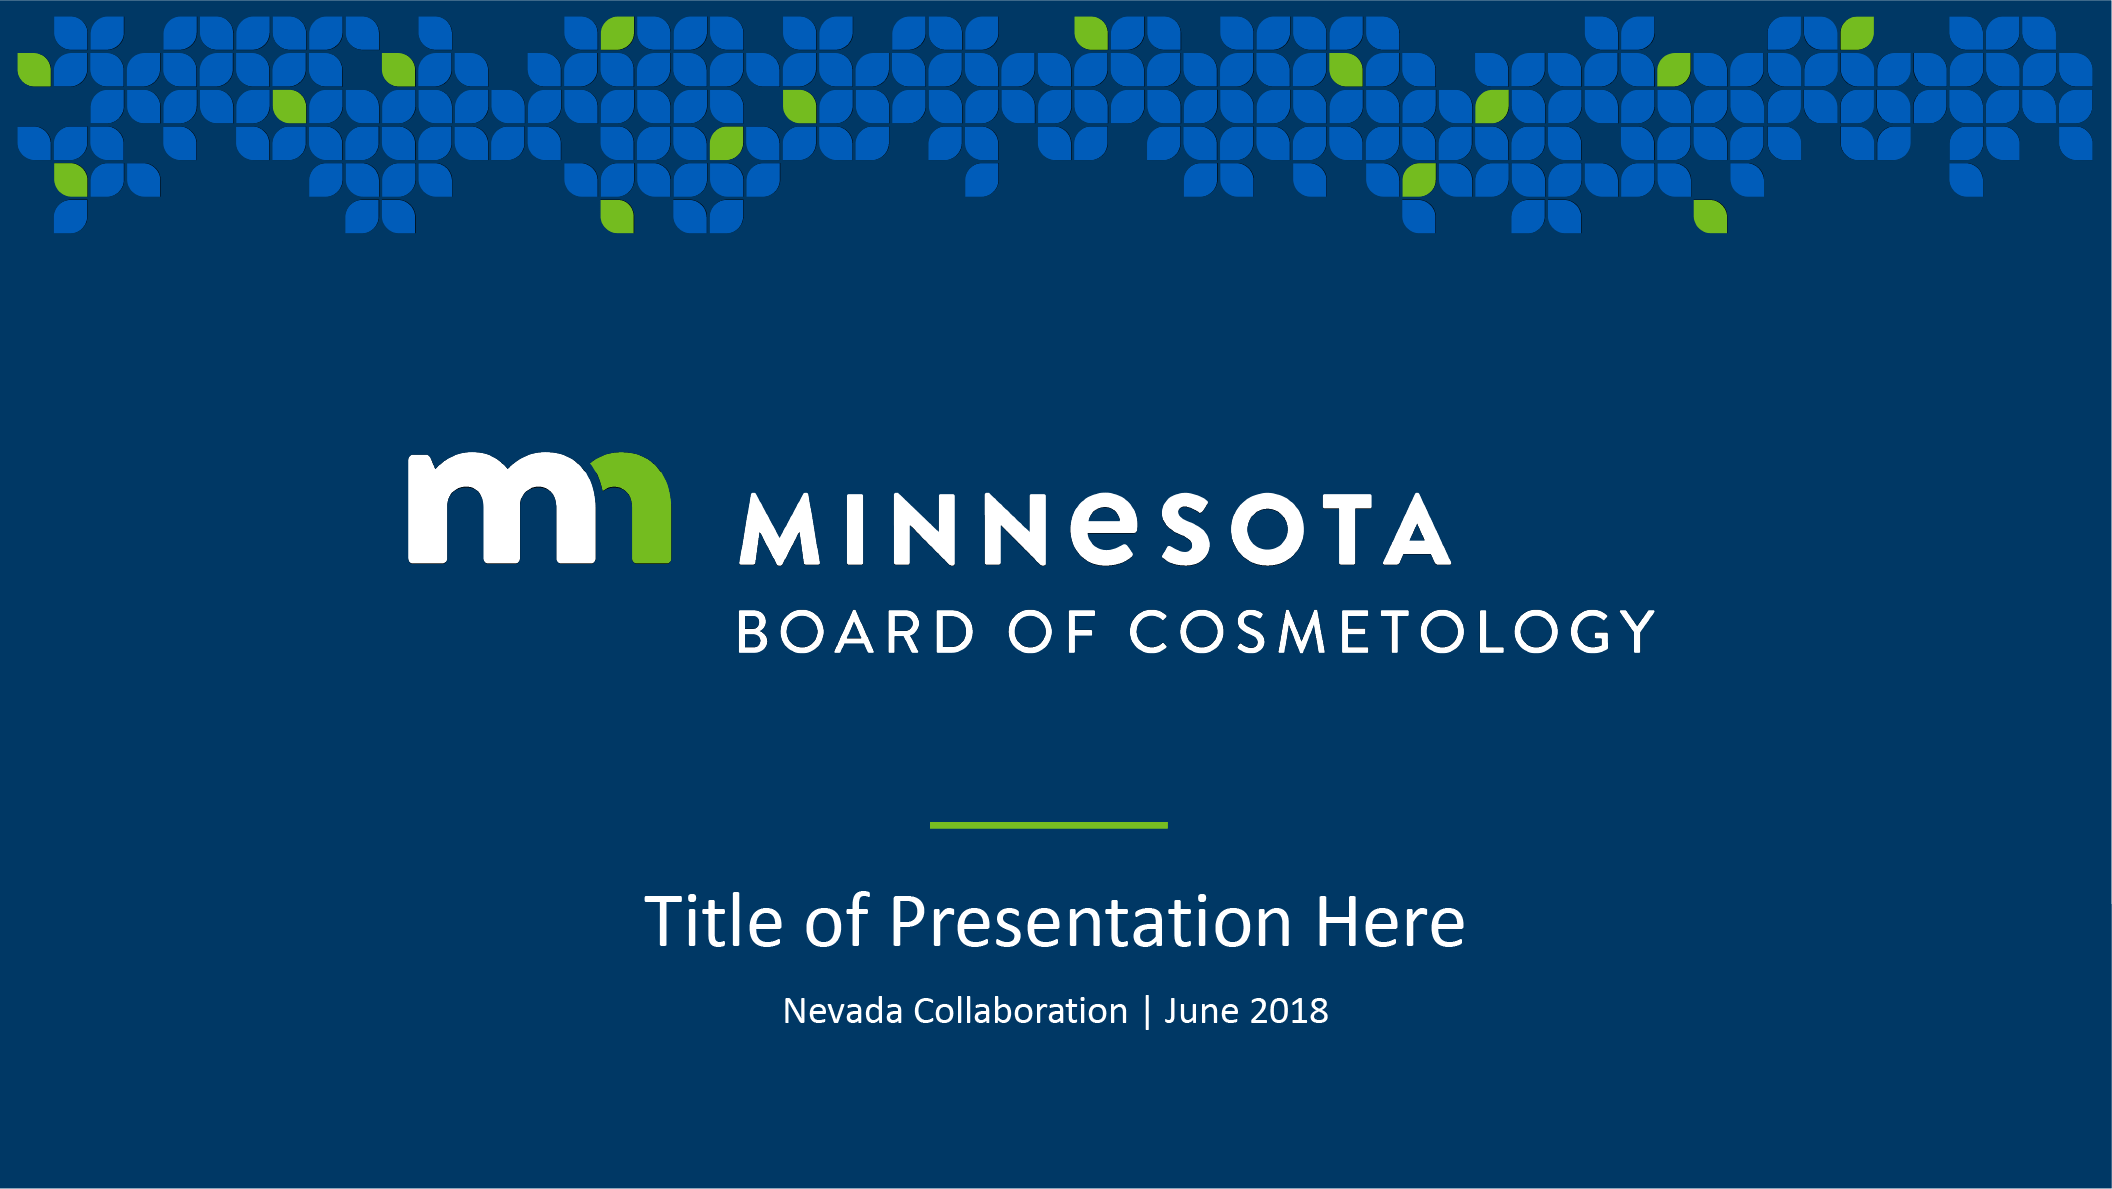 Minnesota Board of Cosmetology powerpoint title slide